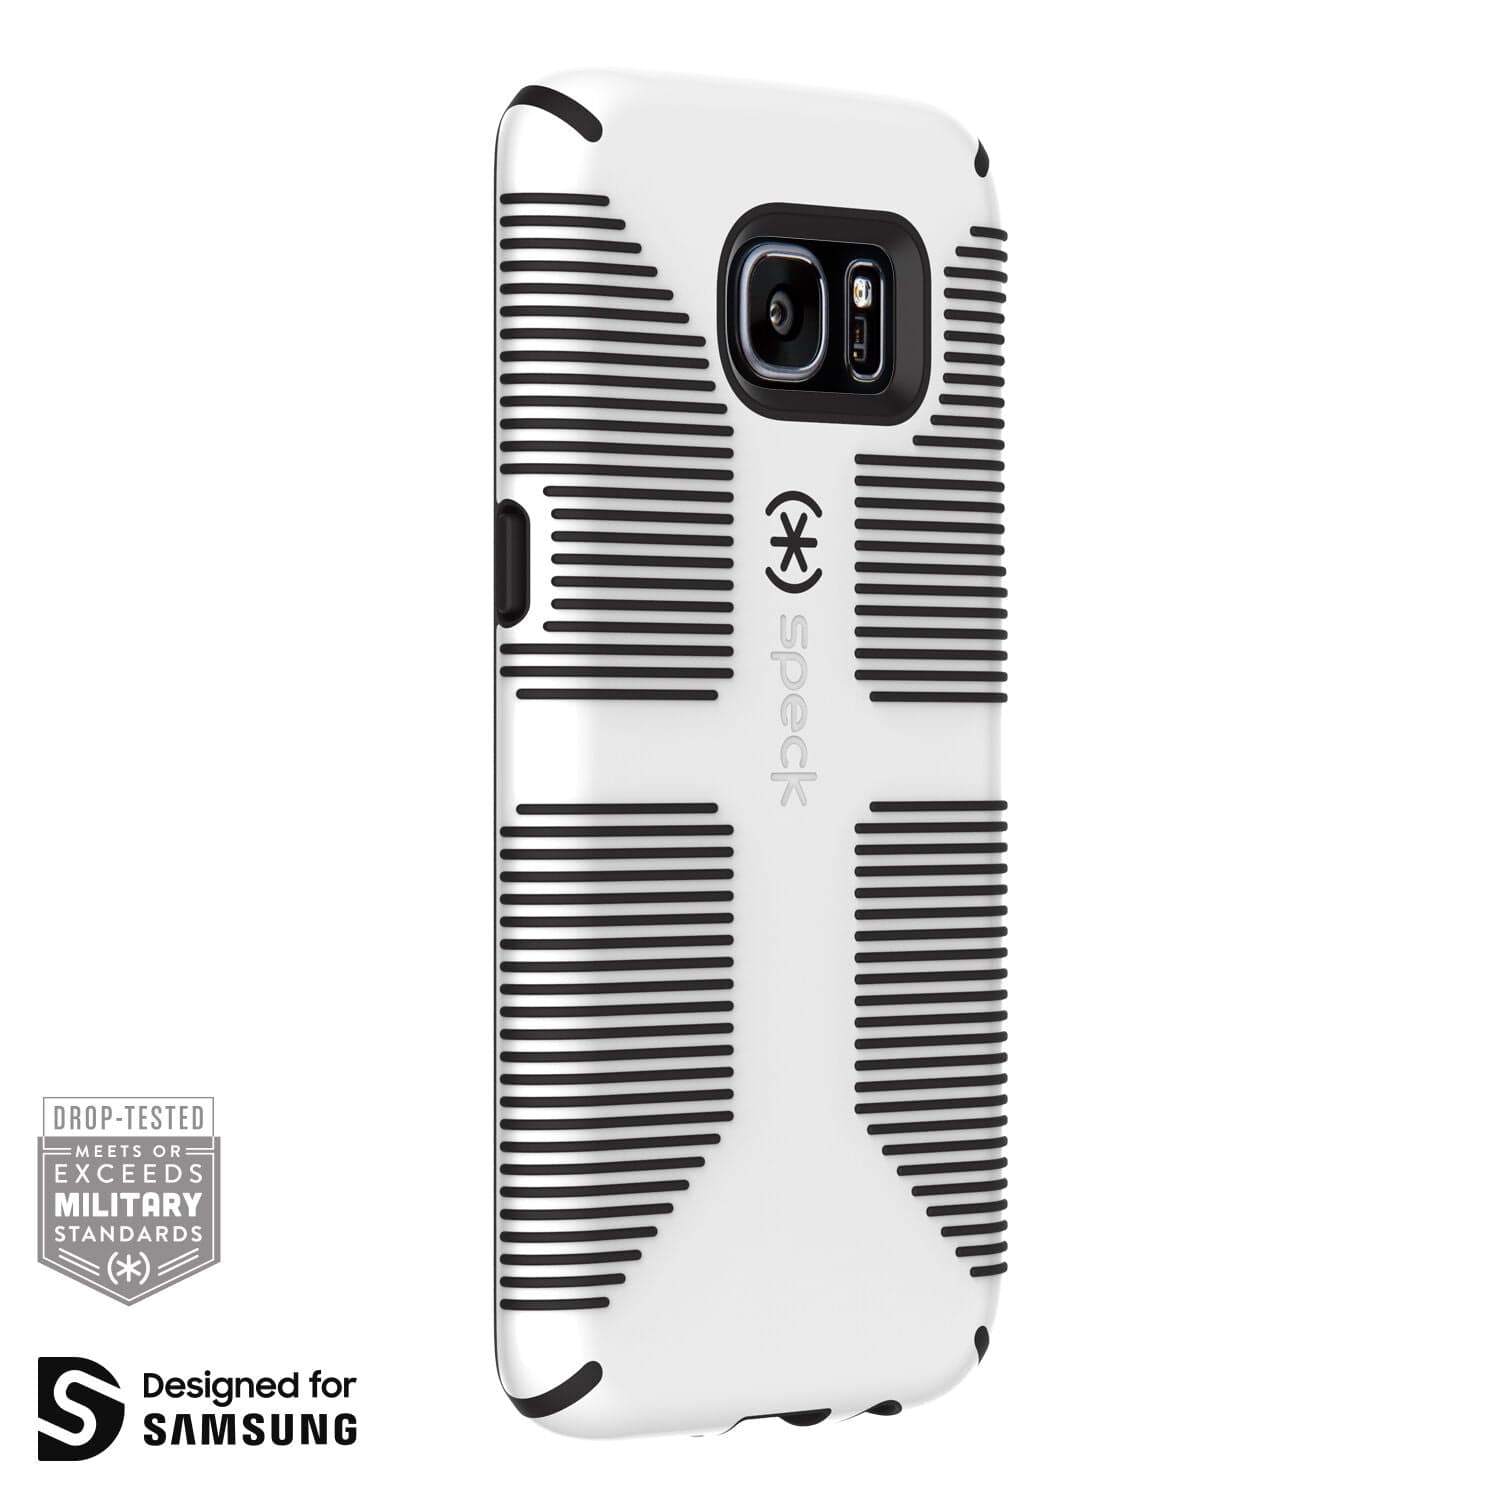 Gelach schrobben Brandewijn Speck CandyShell Grip Samsung Galaxy S7 edge Cases Best Galaxy S7 edge -  $14.95